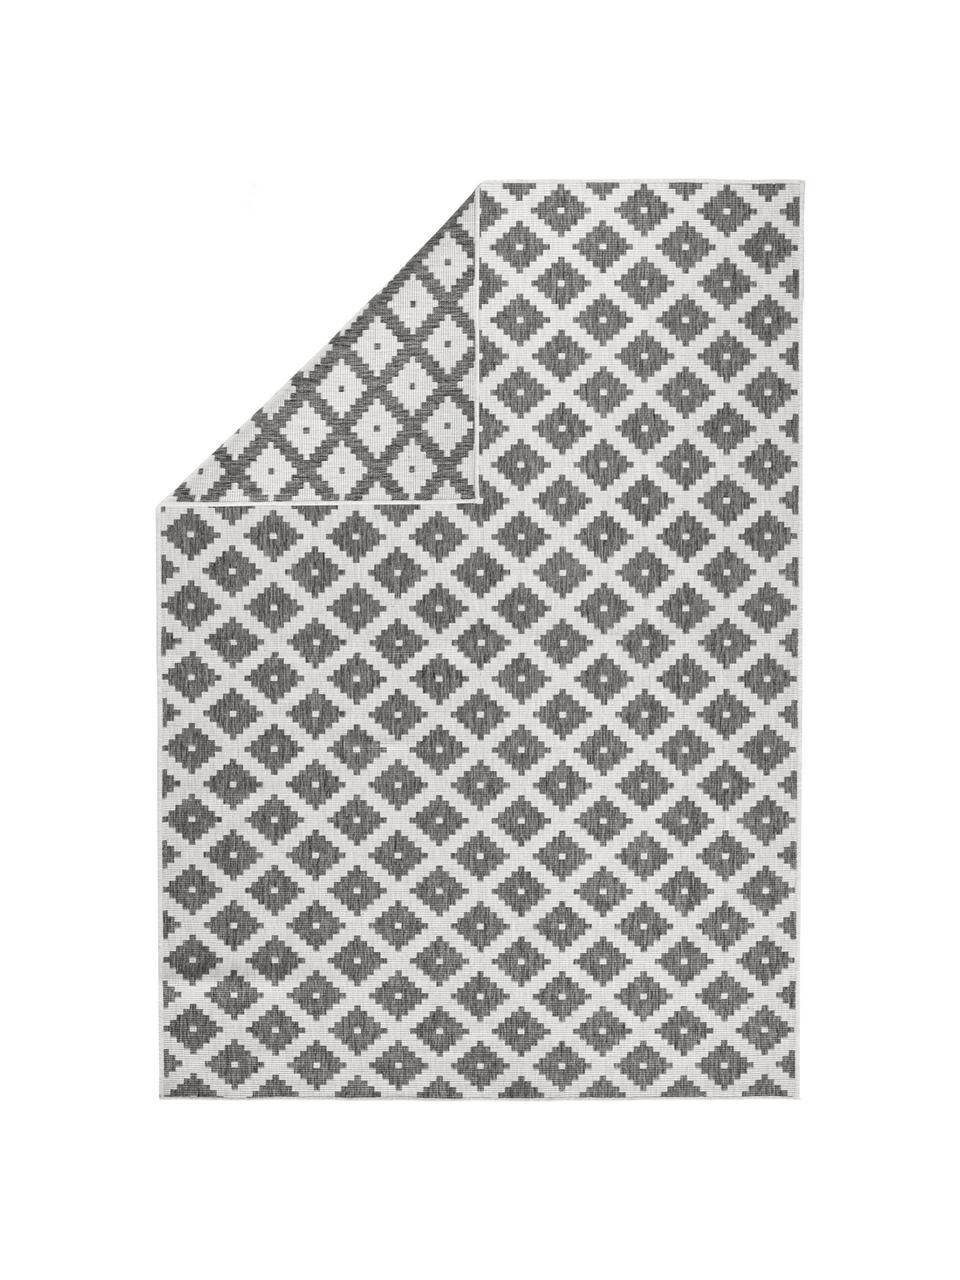 Tappeto reversibile  da interno-esterno Nizza, Grigio, color crema, P 290 x L 200 cm